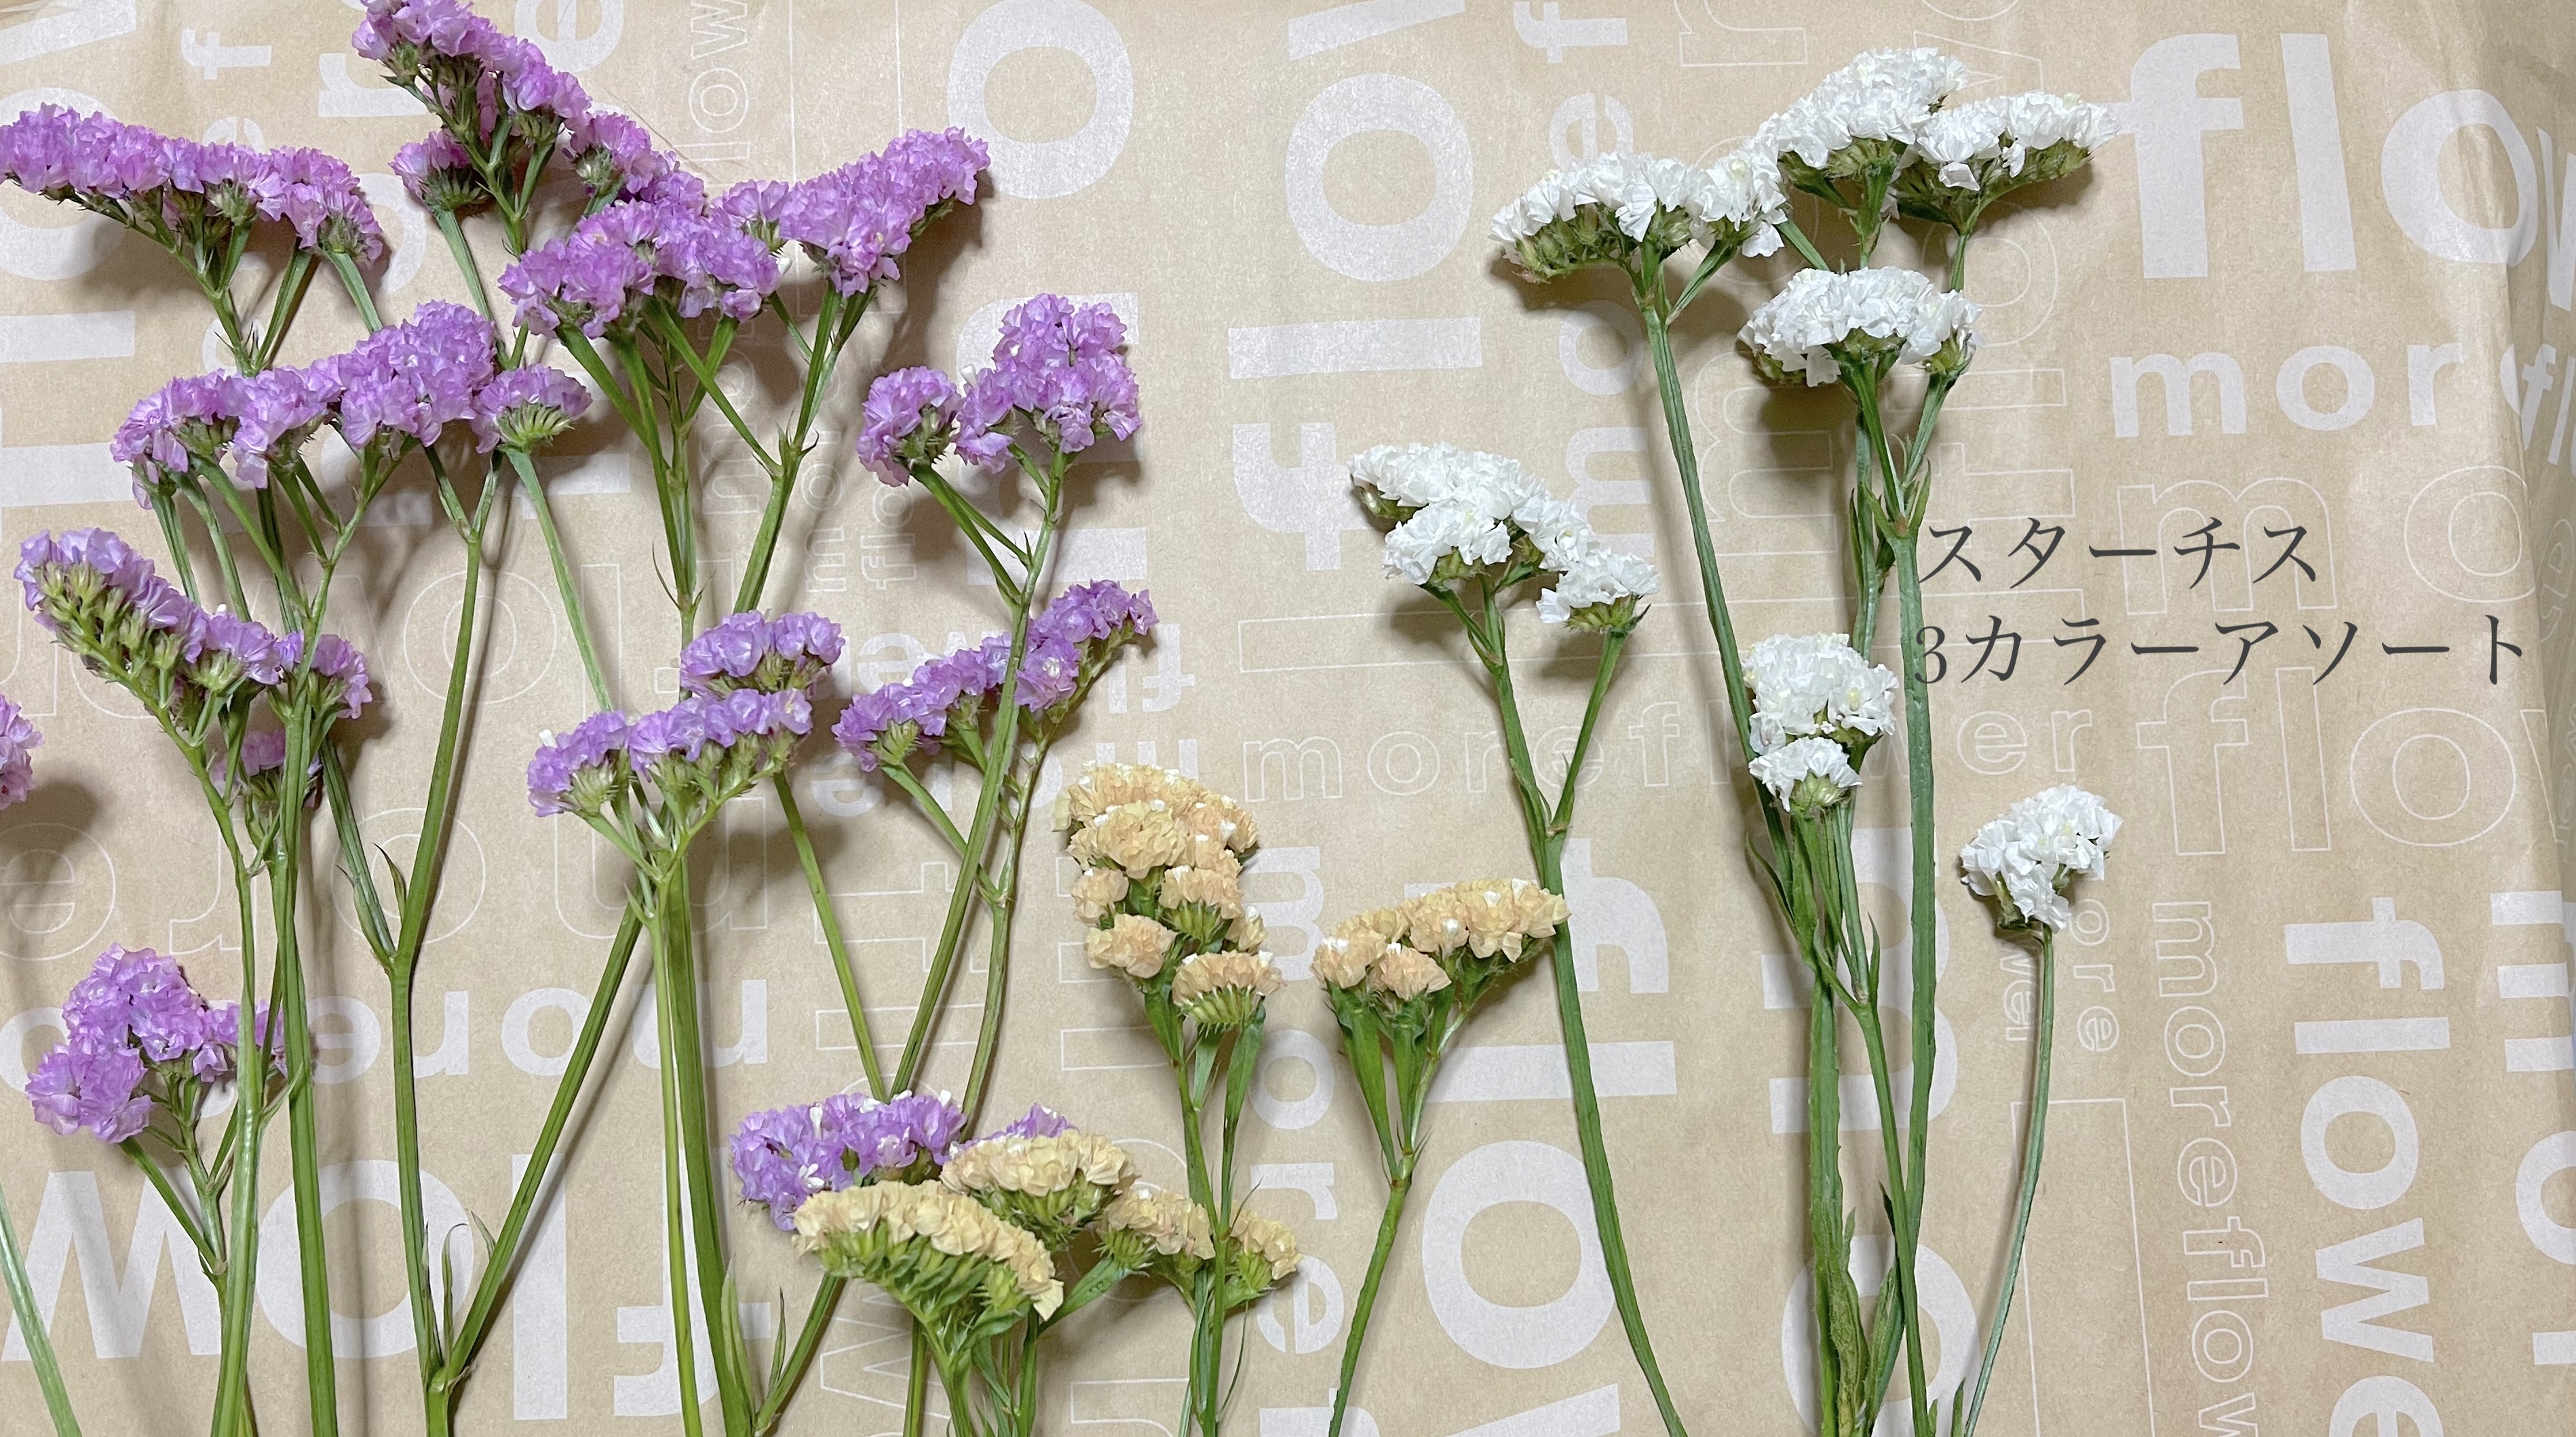 スターチス ドライフラワー 花材 レジン制作などに小さなお花です Iichi ハンドメイド クラフト作品 手仕事品の通販